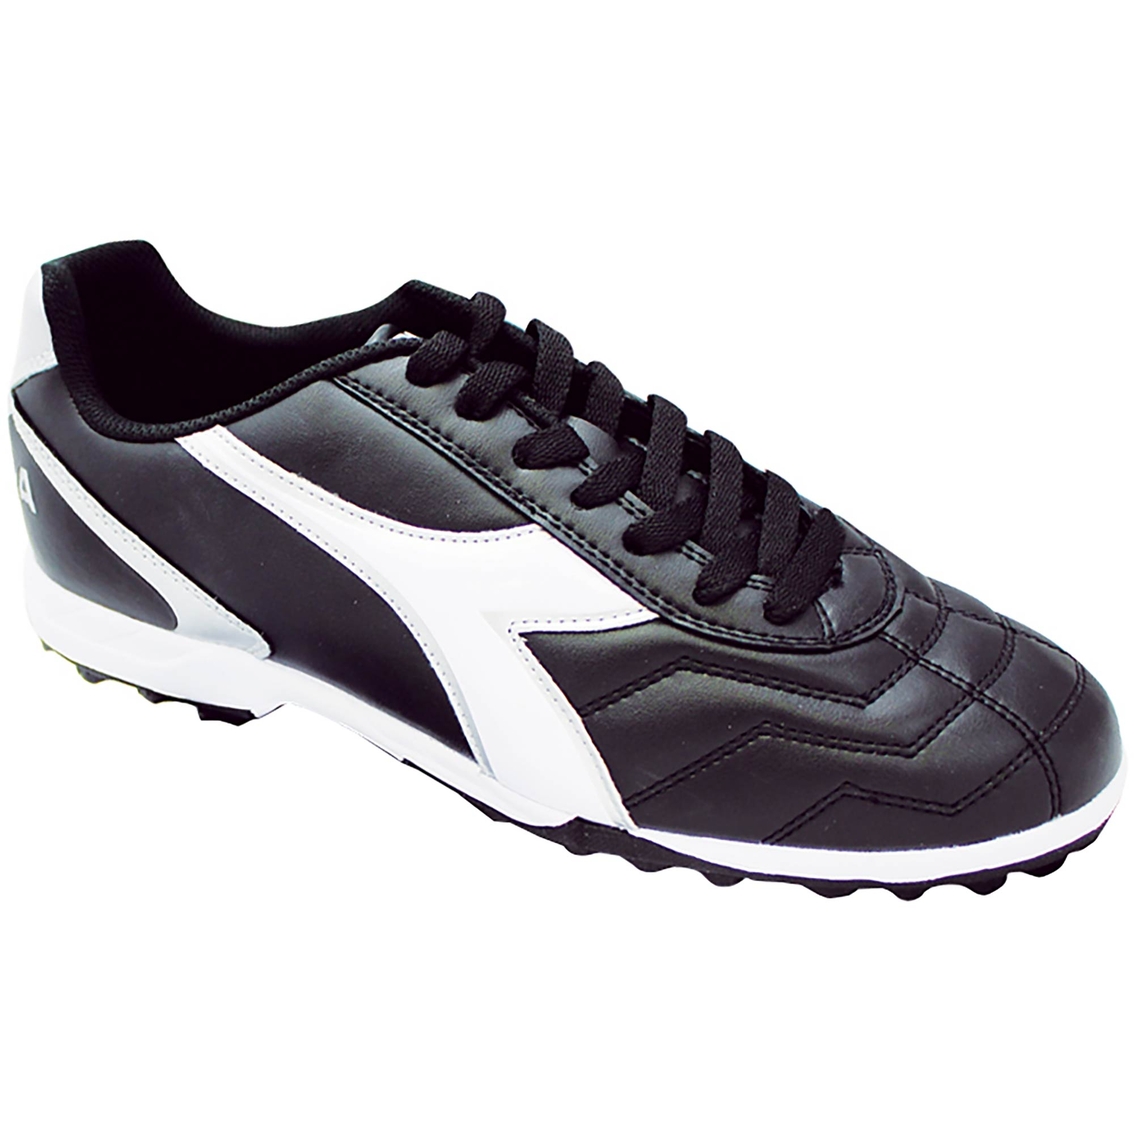 diadora men's capitano turf soccer shoes